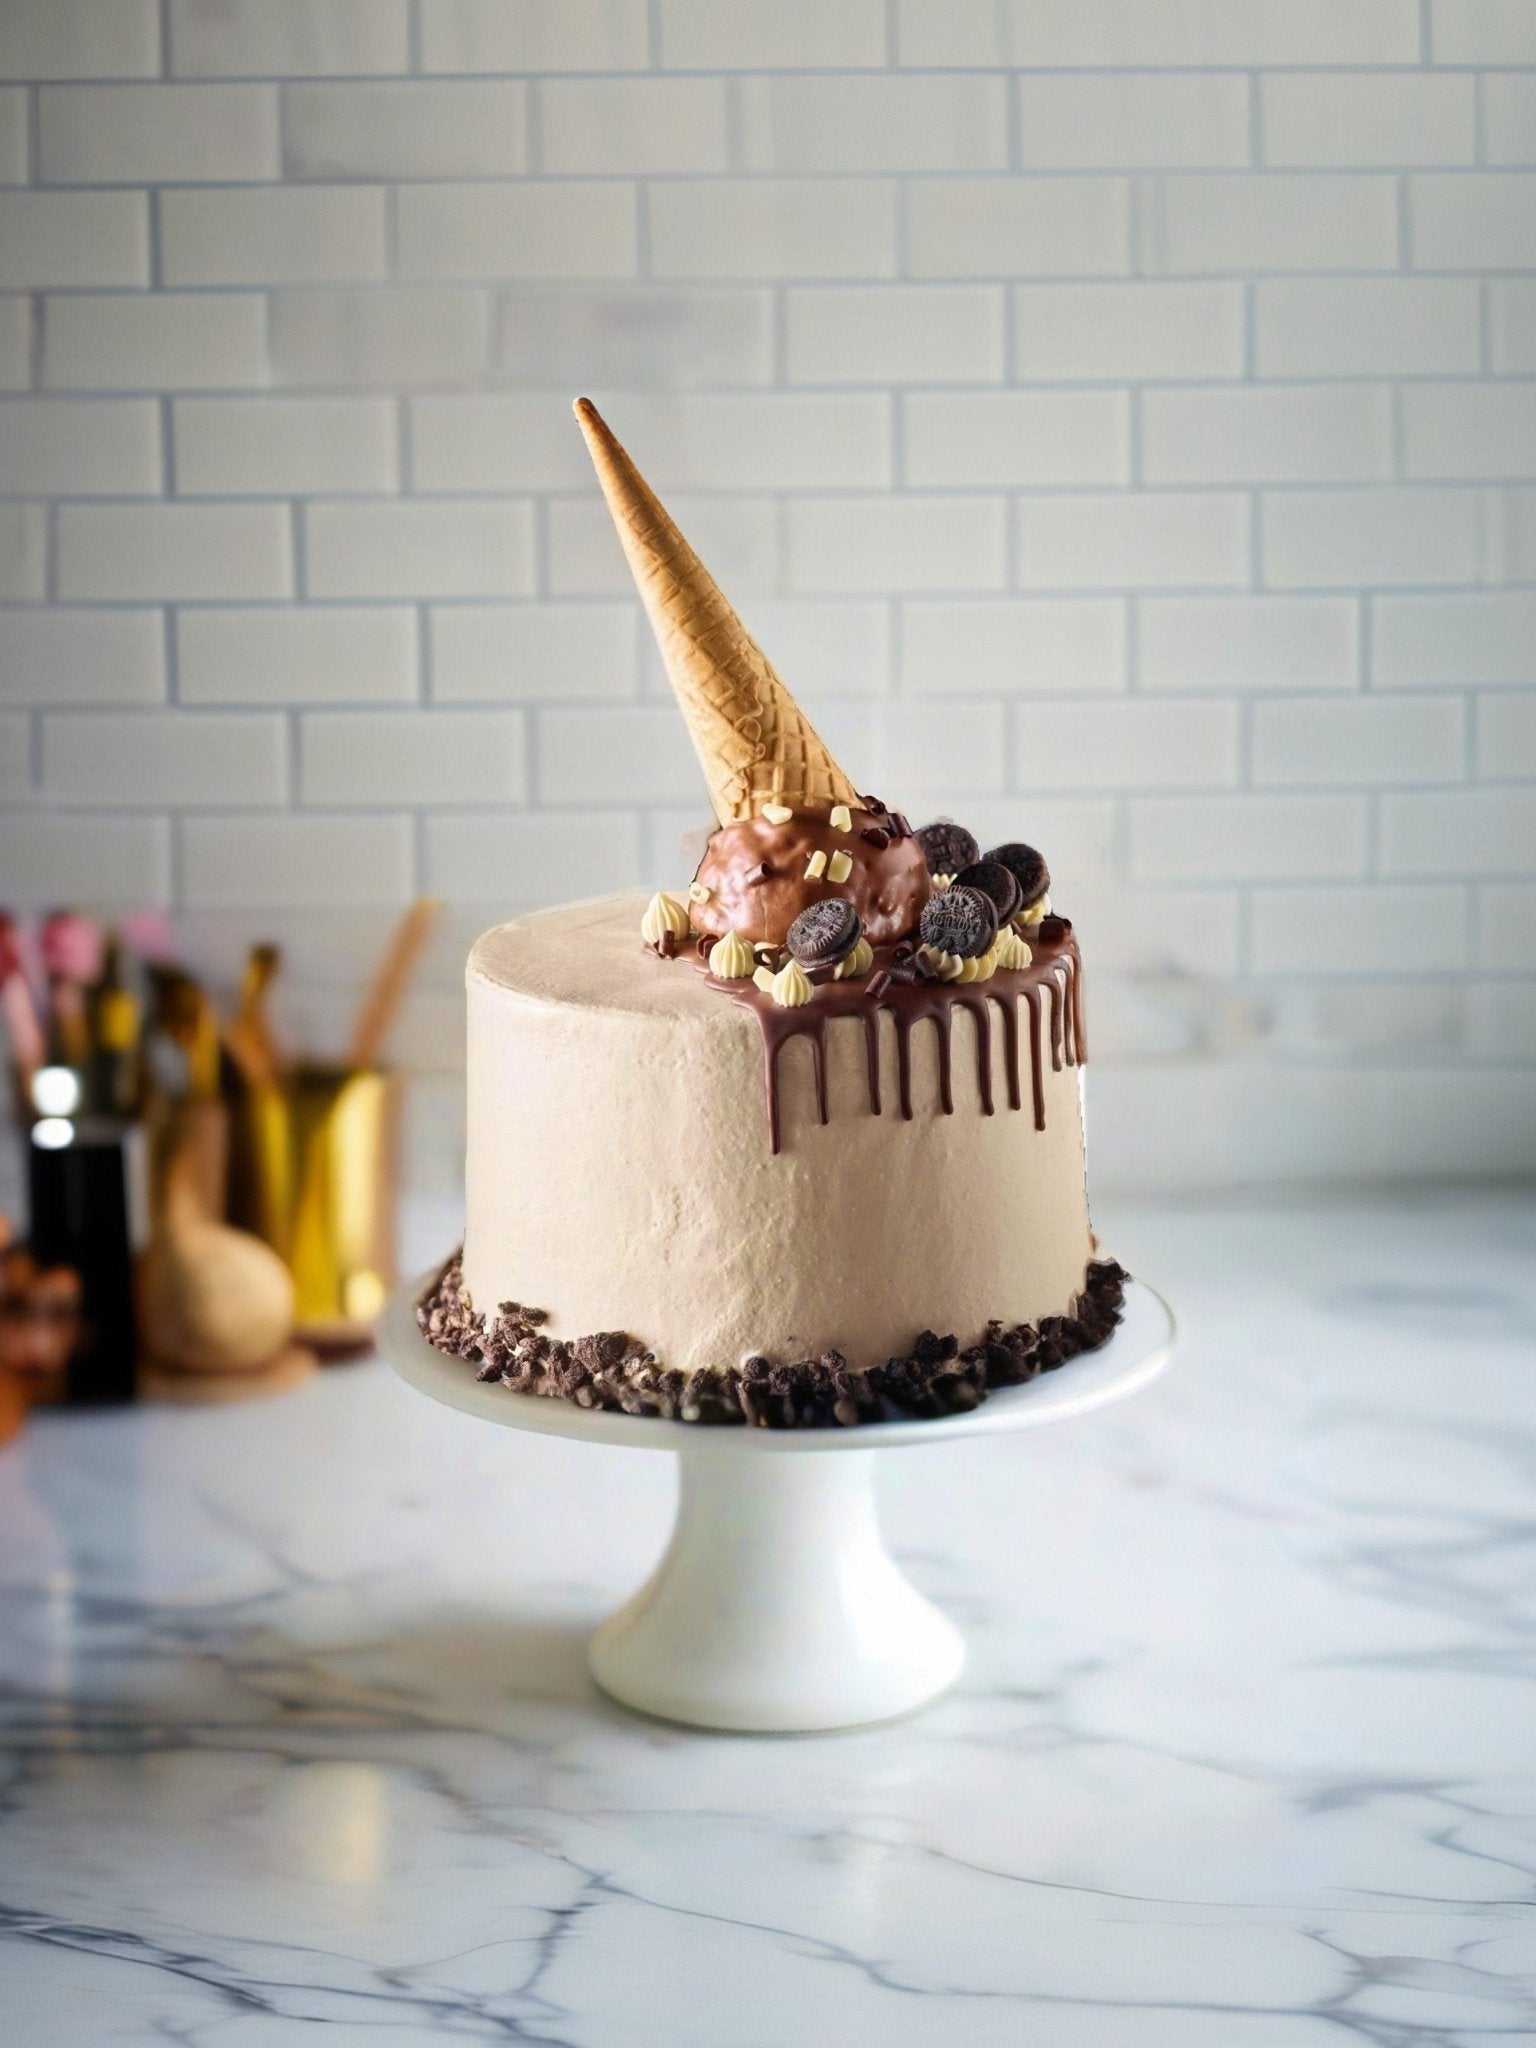 Cookies & Cream Ice Cream Cone Drip Cake - Patisserie Valerie